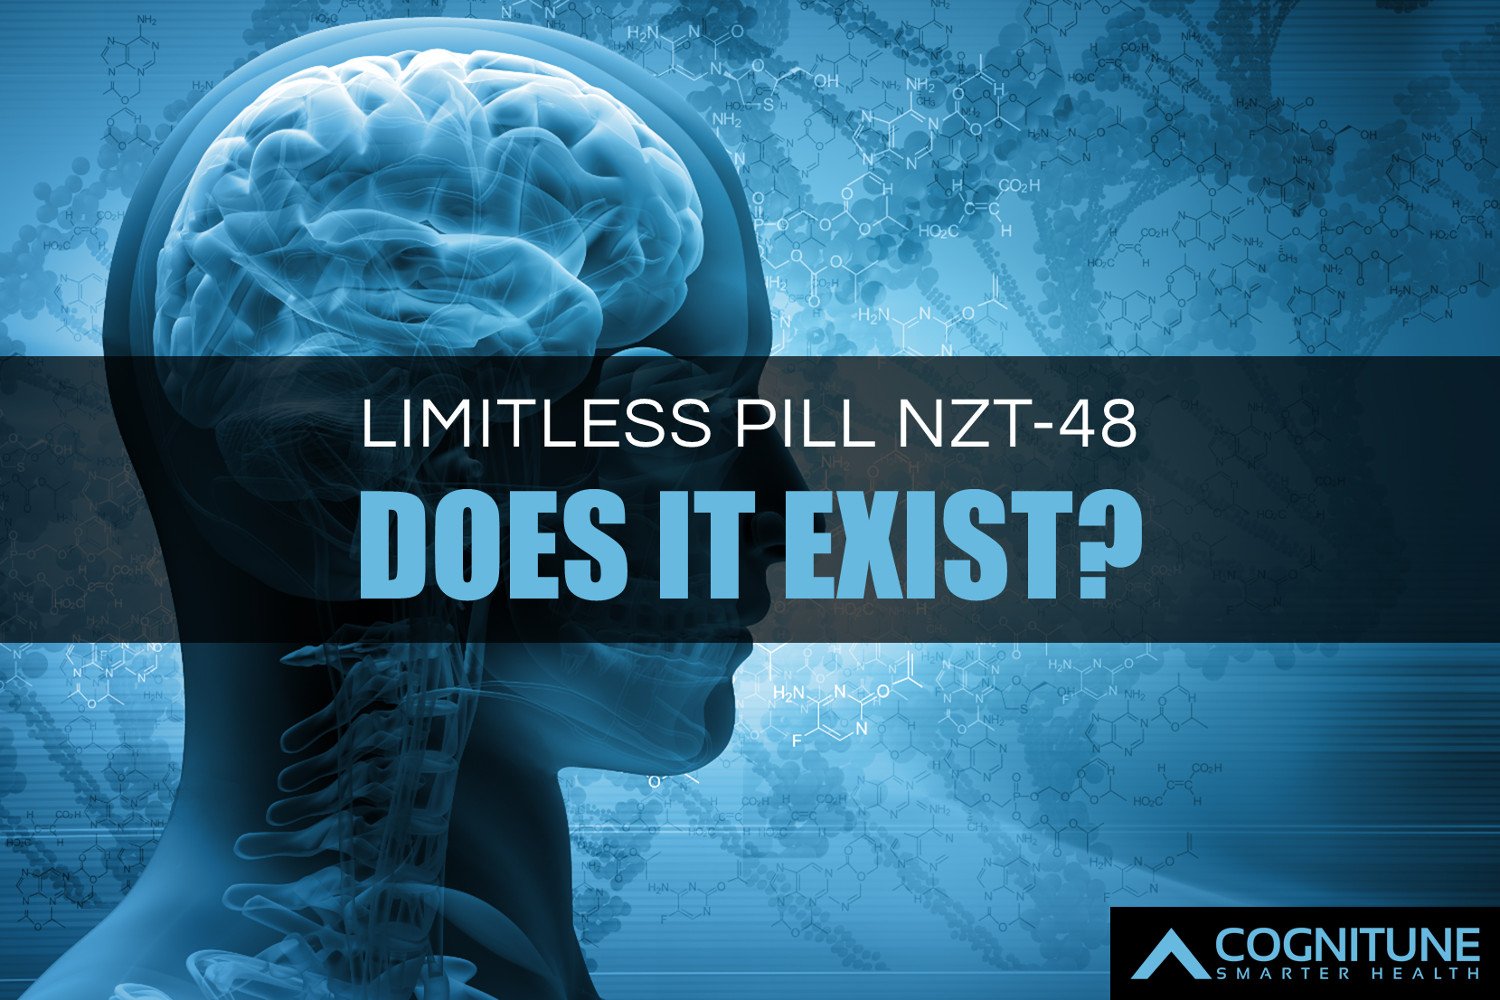 limitless pill